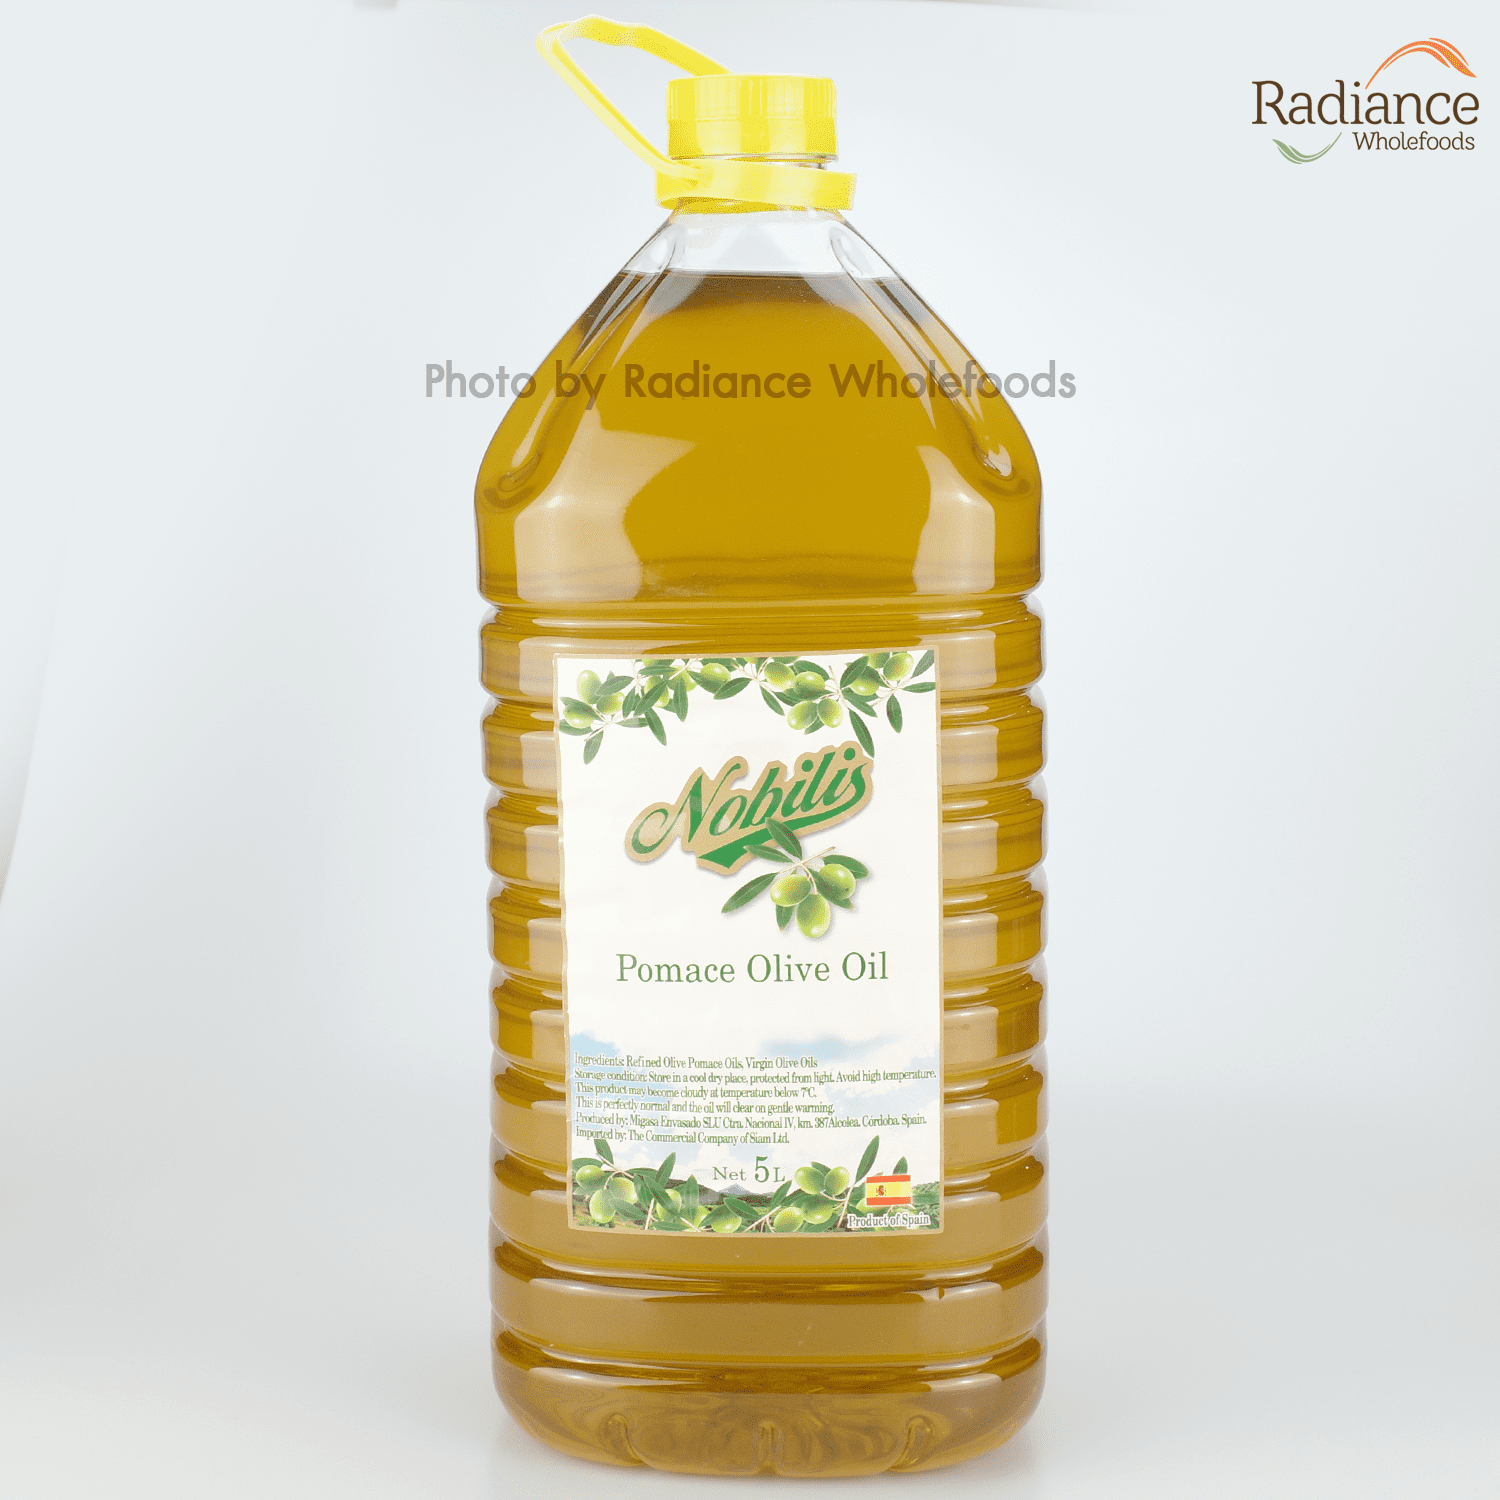 Pomace Olive Oil, Nobilis 5L